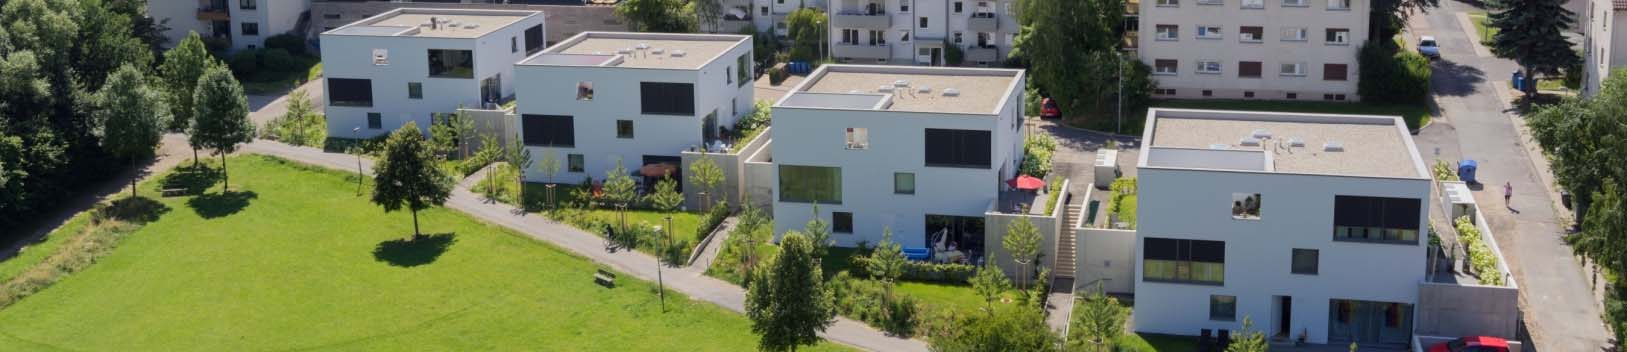 Das Quartier nimmt Form an Die Entwicklung des Quartiers begann 2009 mit der Herstellung der ersten Mehrfamilienhäuser in der Limburger Straße.